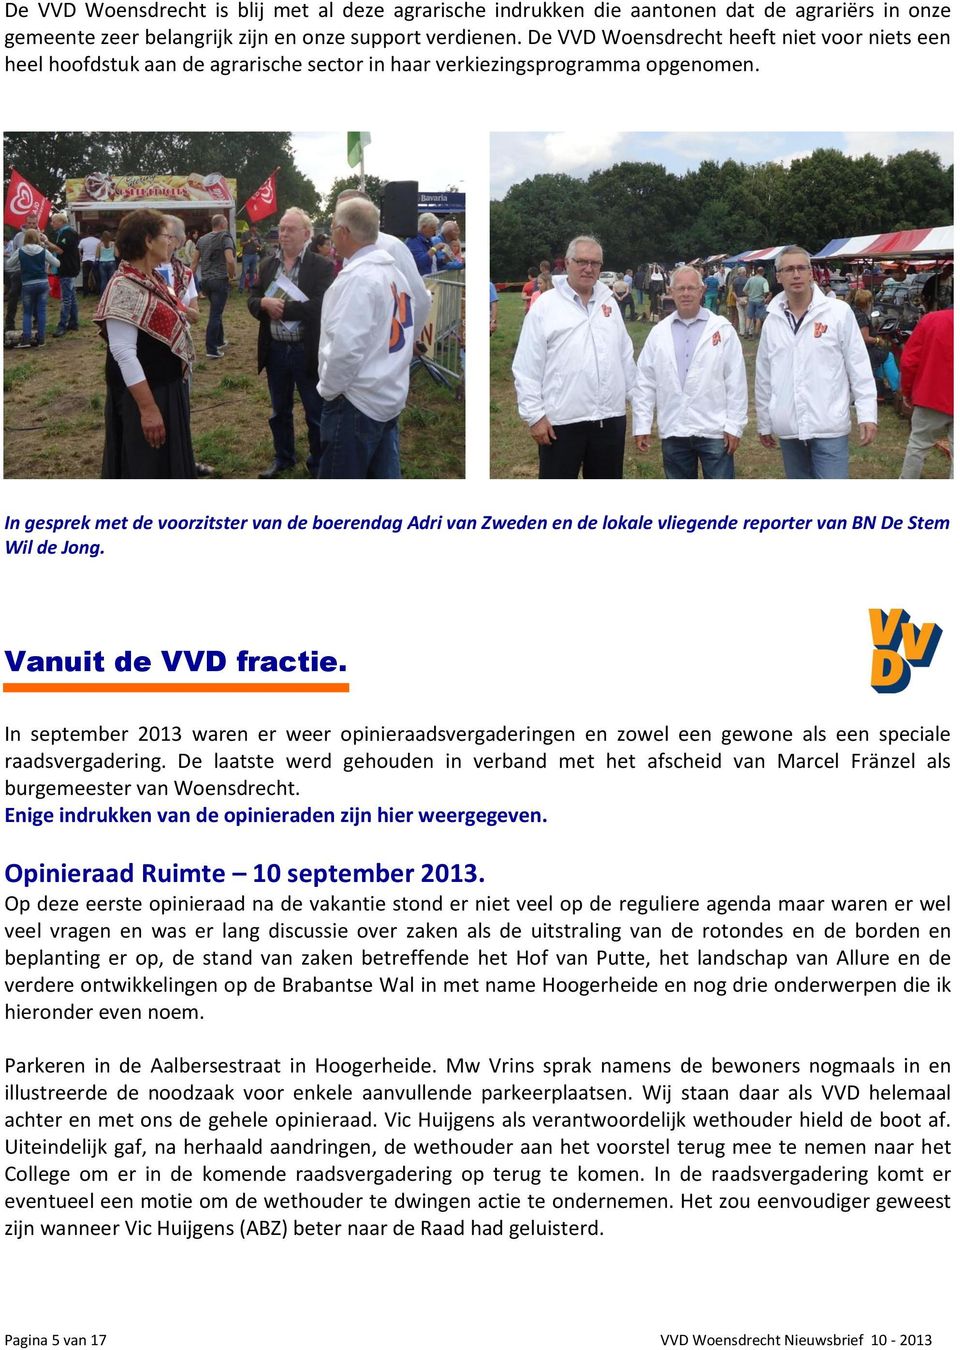 In gesprek met de voorzitster van de boerendag Adri van Zweden en de lokale vliegende reporter van BN De Stem Wil de Jong. Vanuit de VVD fractie.